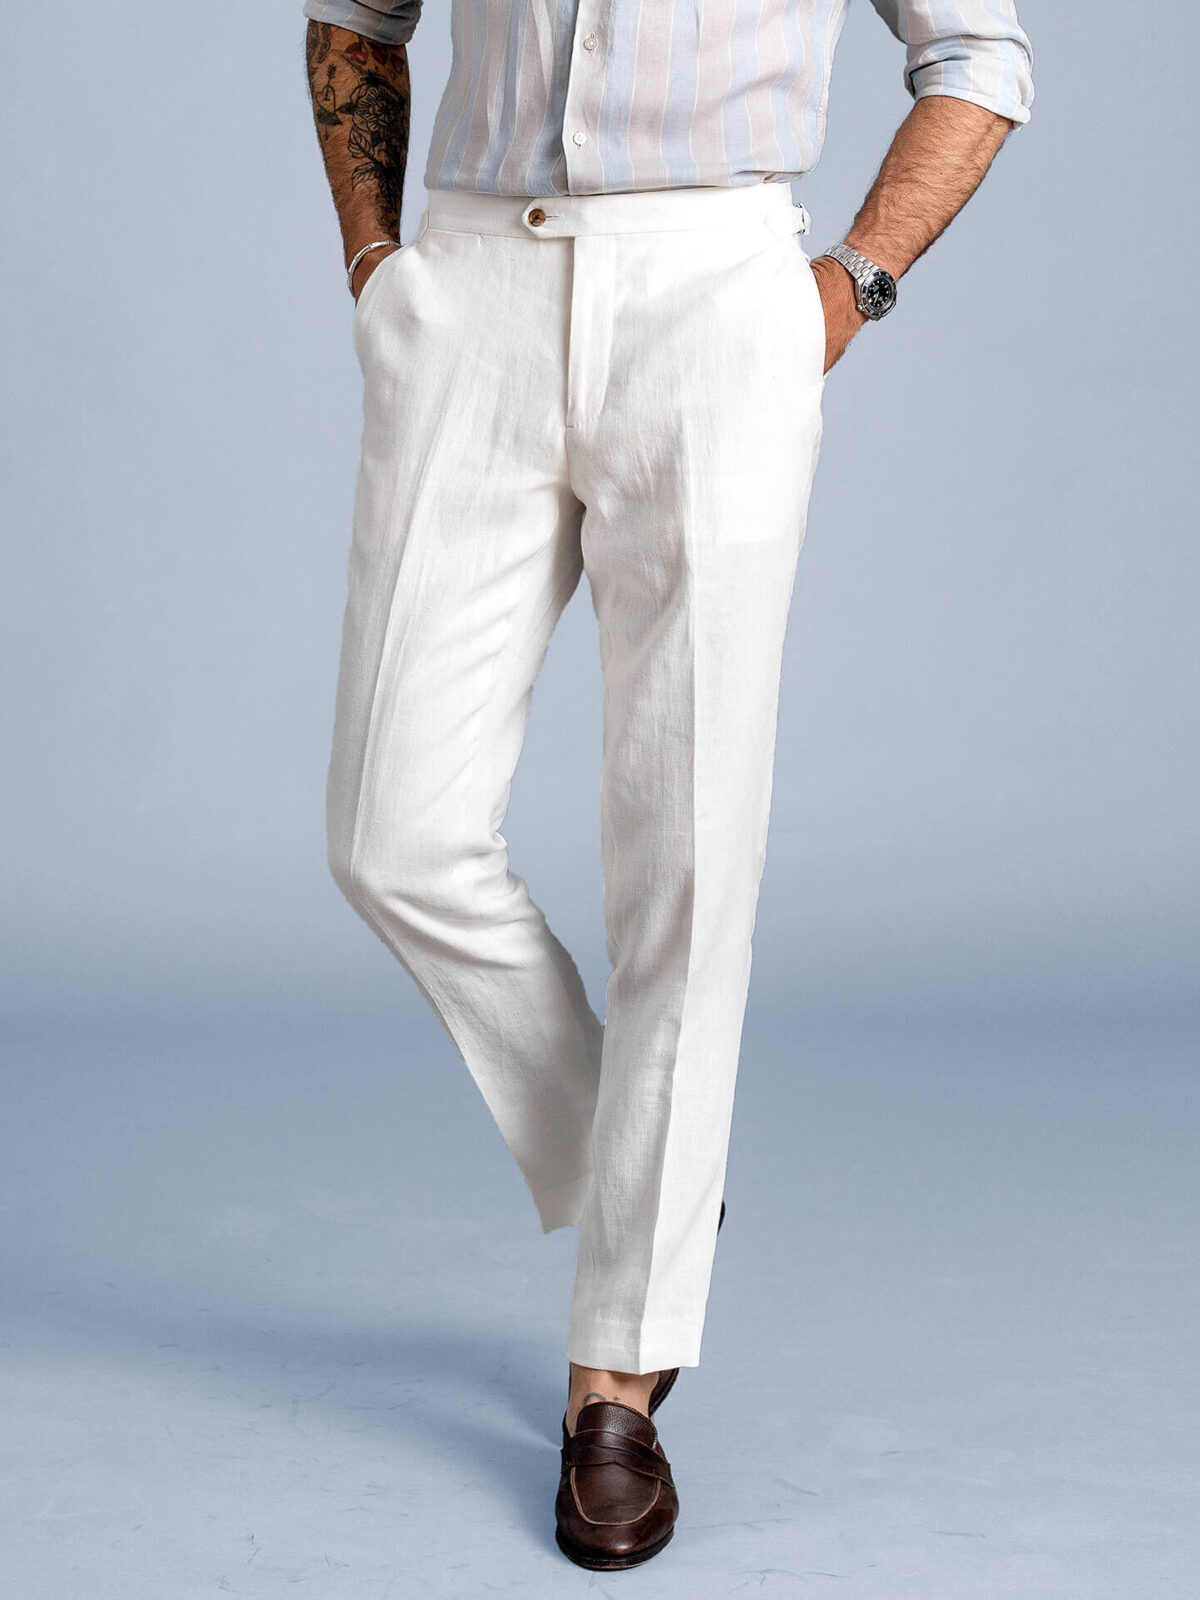 White Pants  WideLeg Pants  Culotte Pants  Linen Pants  Lulus